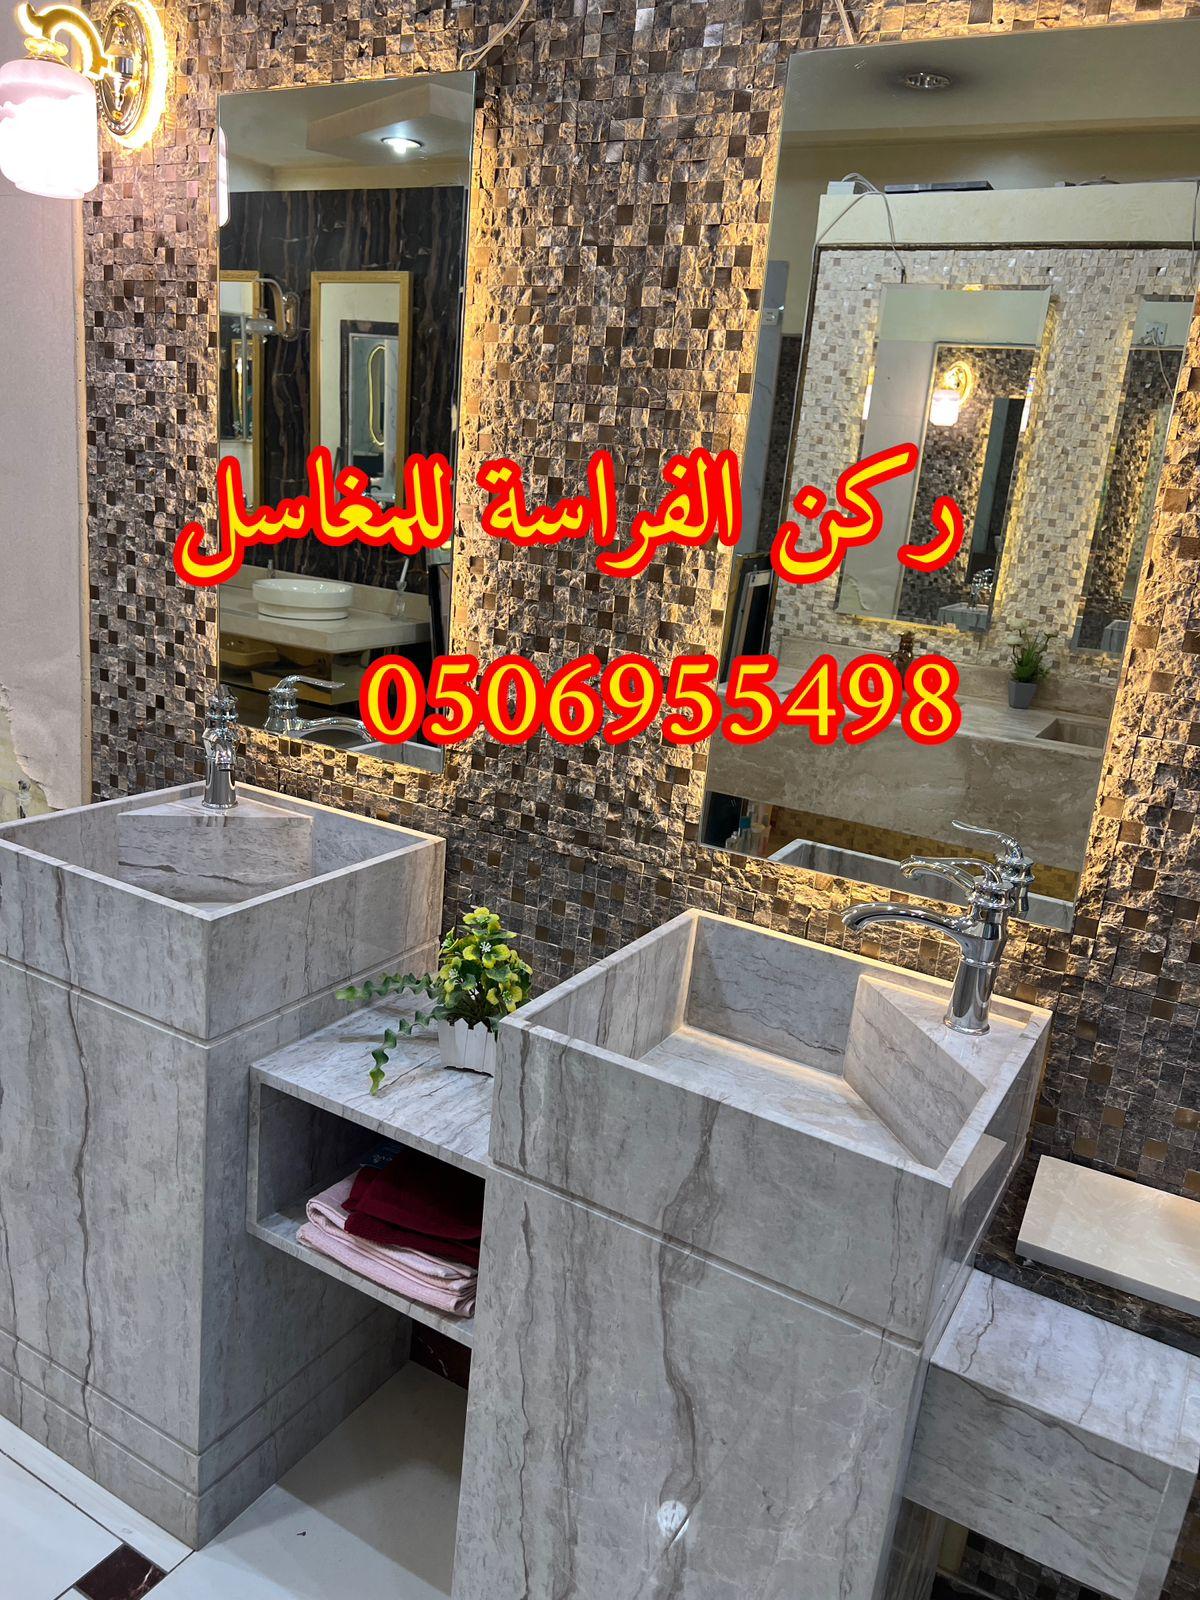 اشكال مغاسل رخام حديثة في الرياض,0506955498 392695765